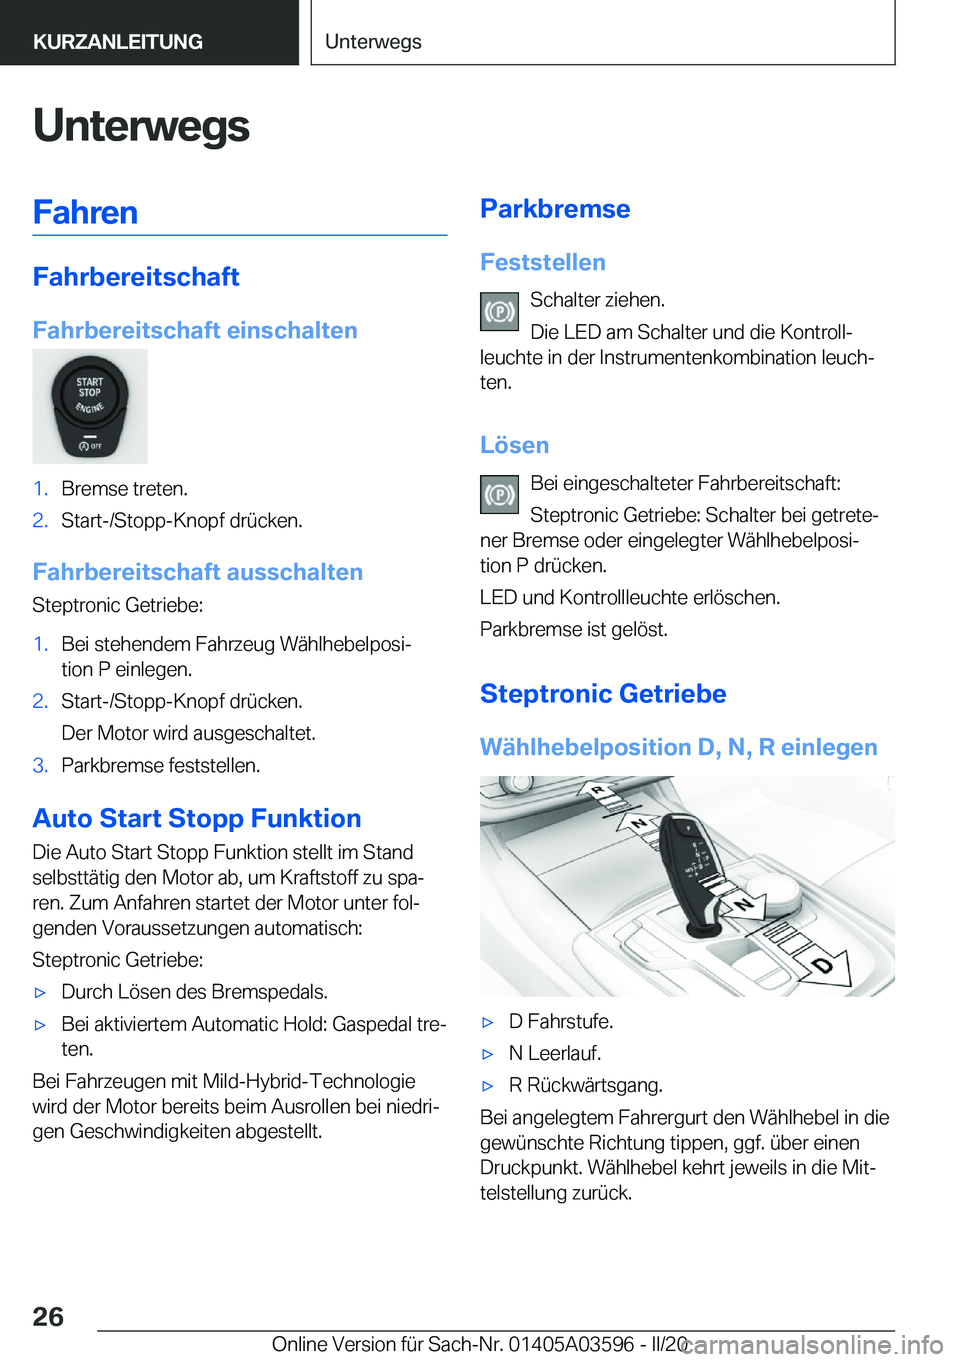 BMW X4 2020  Betriebsanleitungen (in German) �U�n�t�e�r�w�e�g�s�F�a�h�r�e�n
�F�a�h�r�b�e�r�e�i�t�s�c�h�a�f�t
�F�a�h�r�b�e�r�e�i�t�s�c�h�a�f�t��e�i�n�s�c�h�a�l�t�e�n
�1�.�B�r�e�m�s�e��t�r�e�t�e�n�.�2�.�S�t�a�r�t�-�/�S�t�o�p�p�-�K�n�o�p�f��d�r�